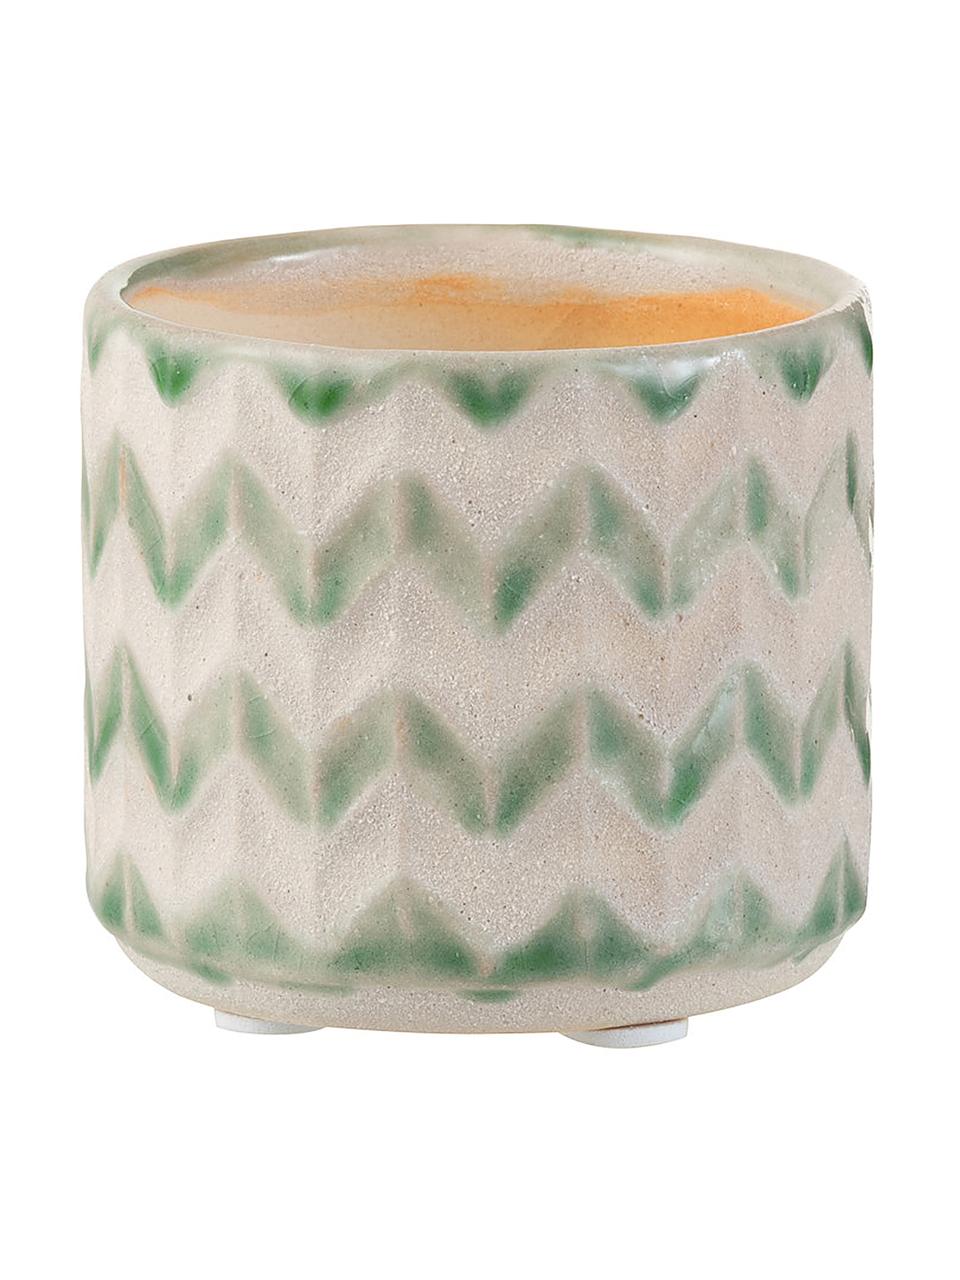 Portavaso piccolo Zigzag, Ceramica, Verde, beige chiaro, Ø 8 x Alt. 7 cm